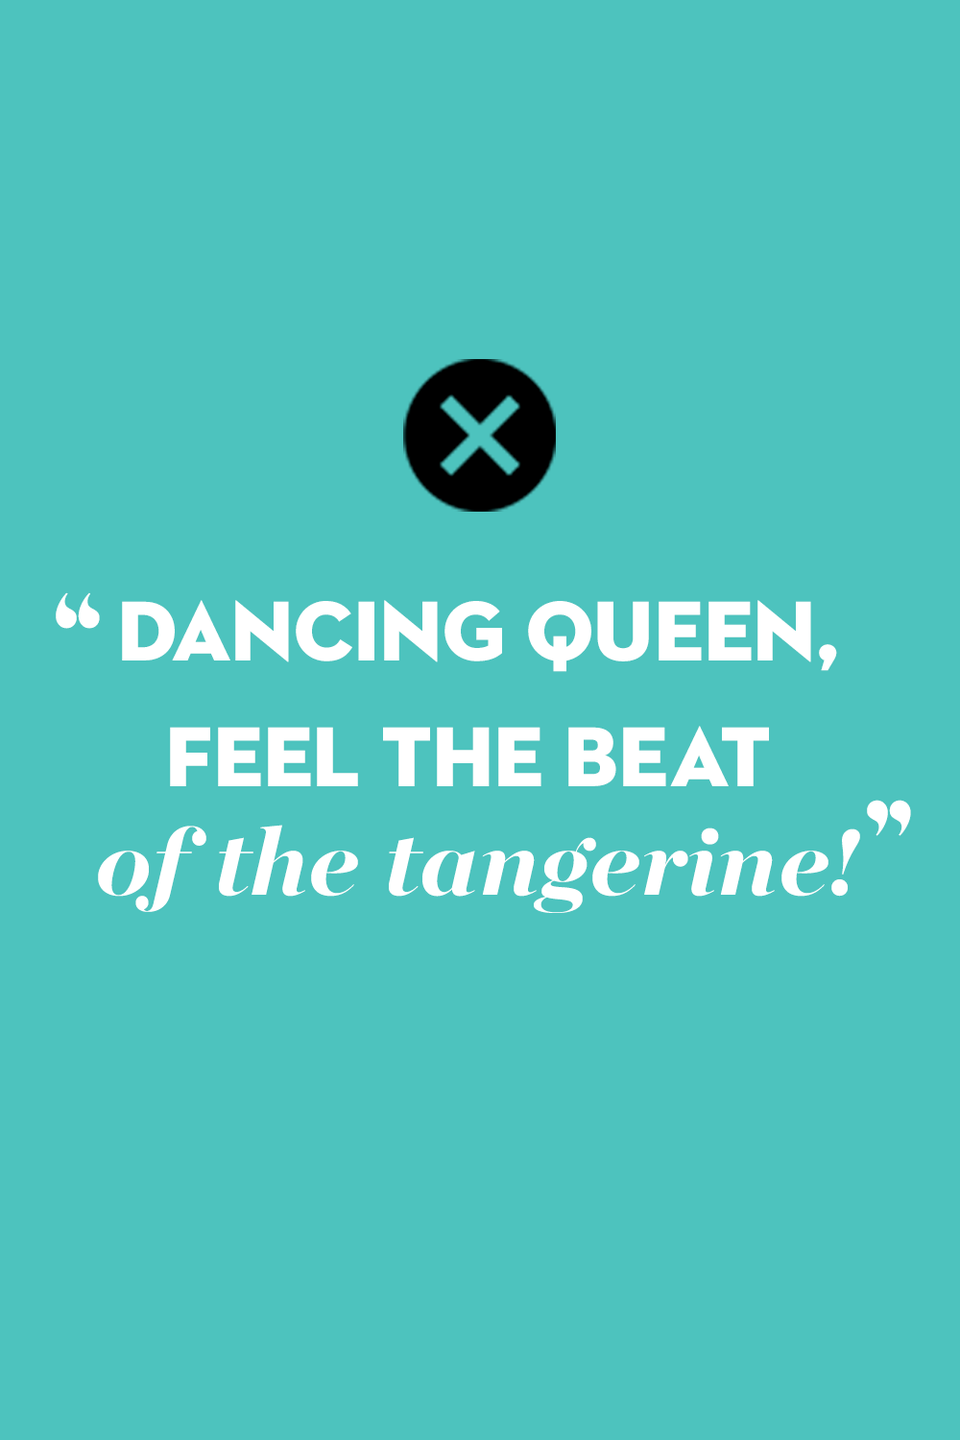 “Dancing Queen” by ABBA